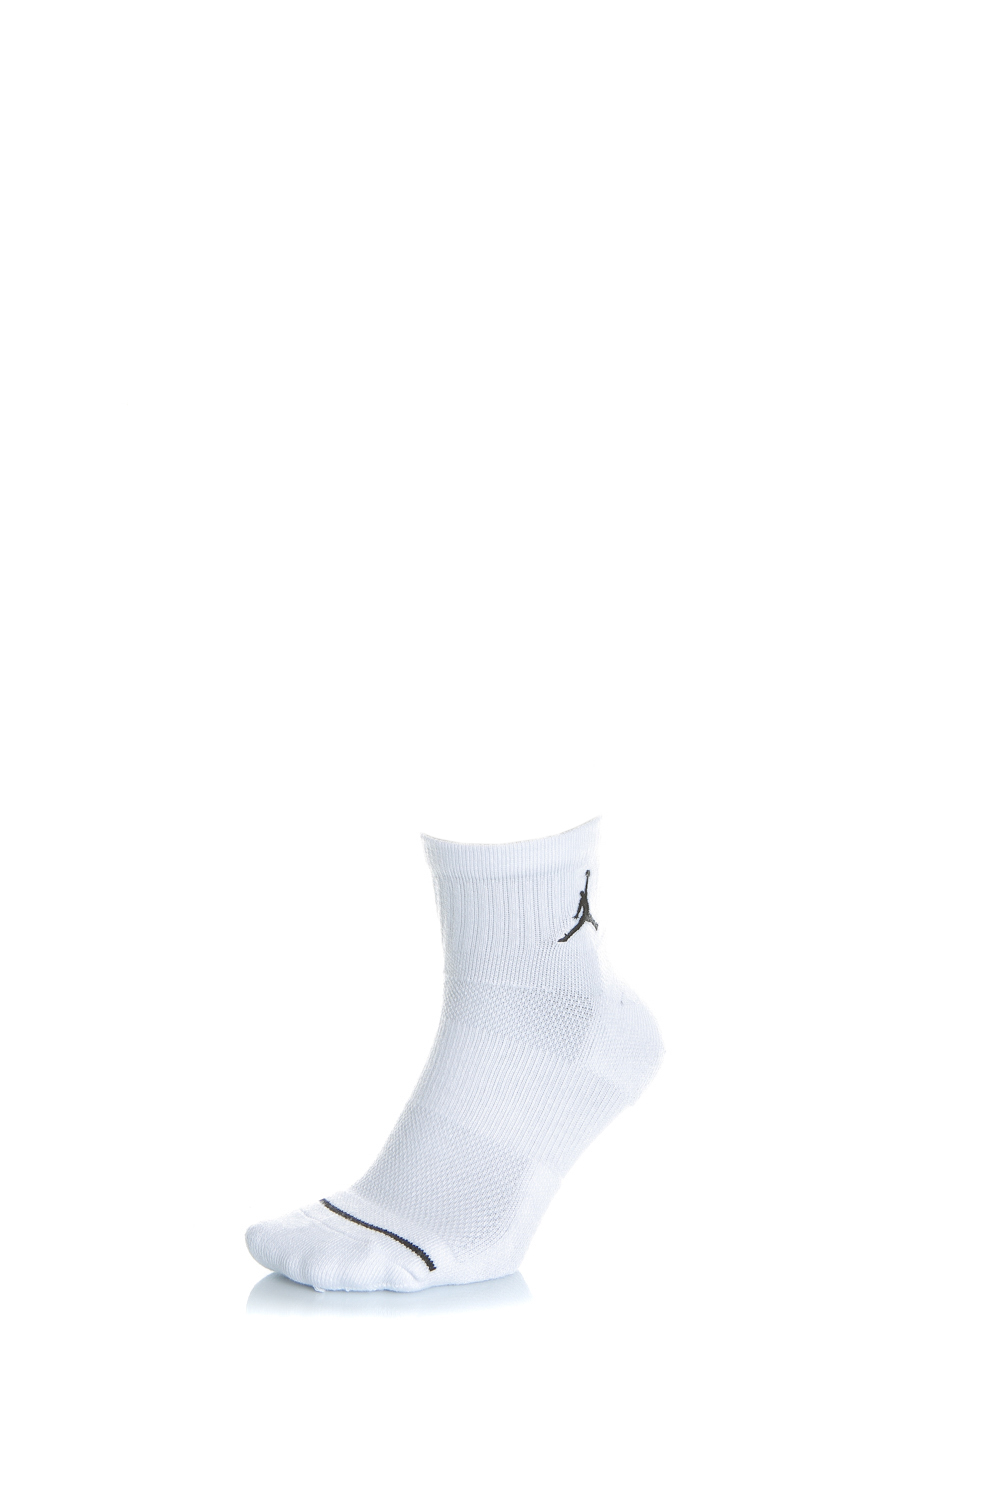 Γυναικεία/Αξεσουάρ/Κάλτσες NIKE - Σετ unisex κάλτσες Nike JORDAN EVRY MAX ANKLE λευκές